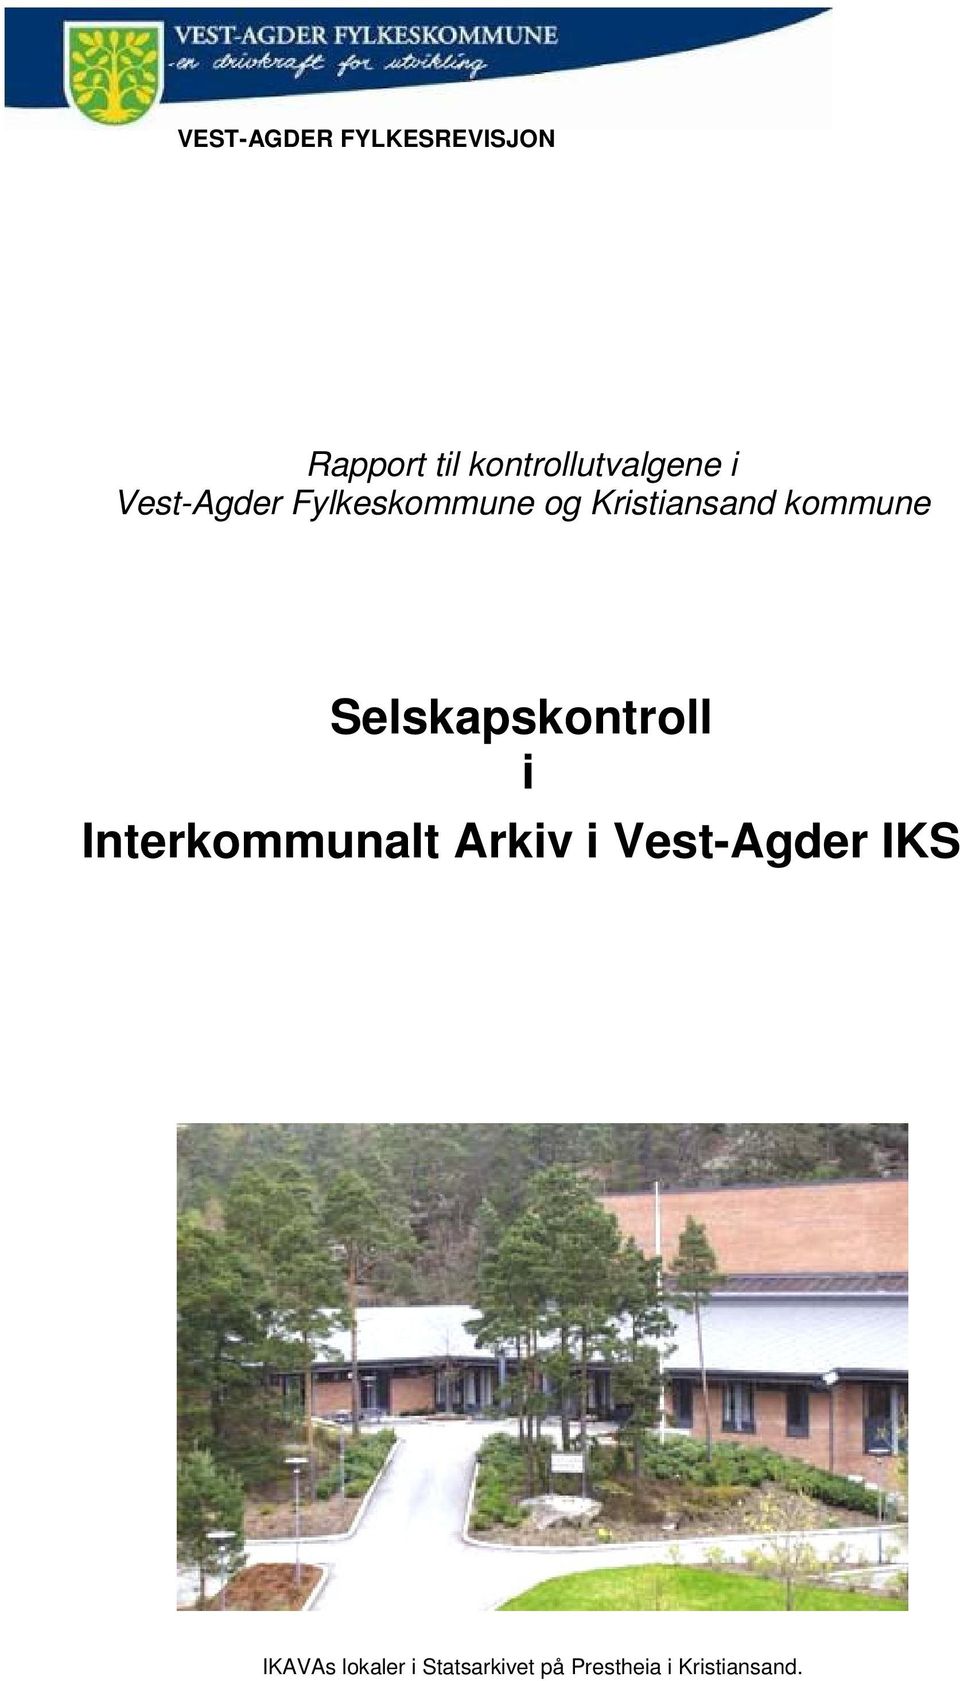 Selskapskontroll i Interkommunalt Arkiv i Vest-Agder